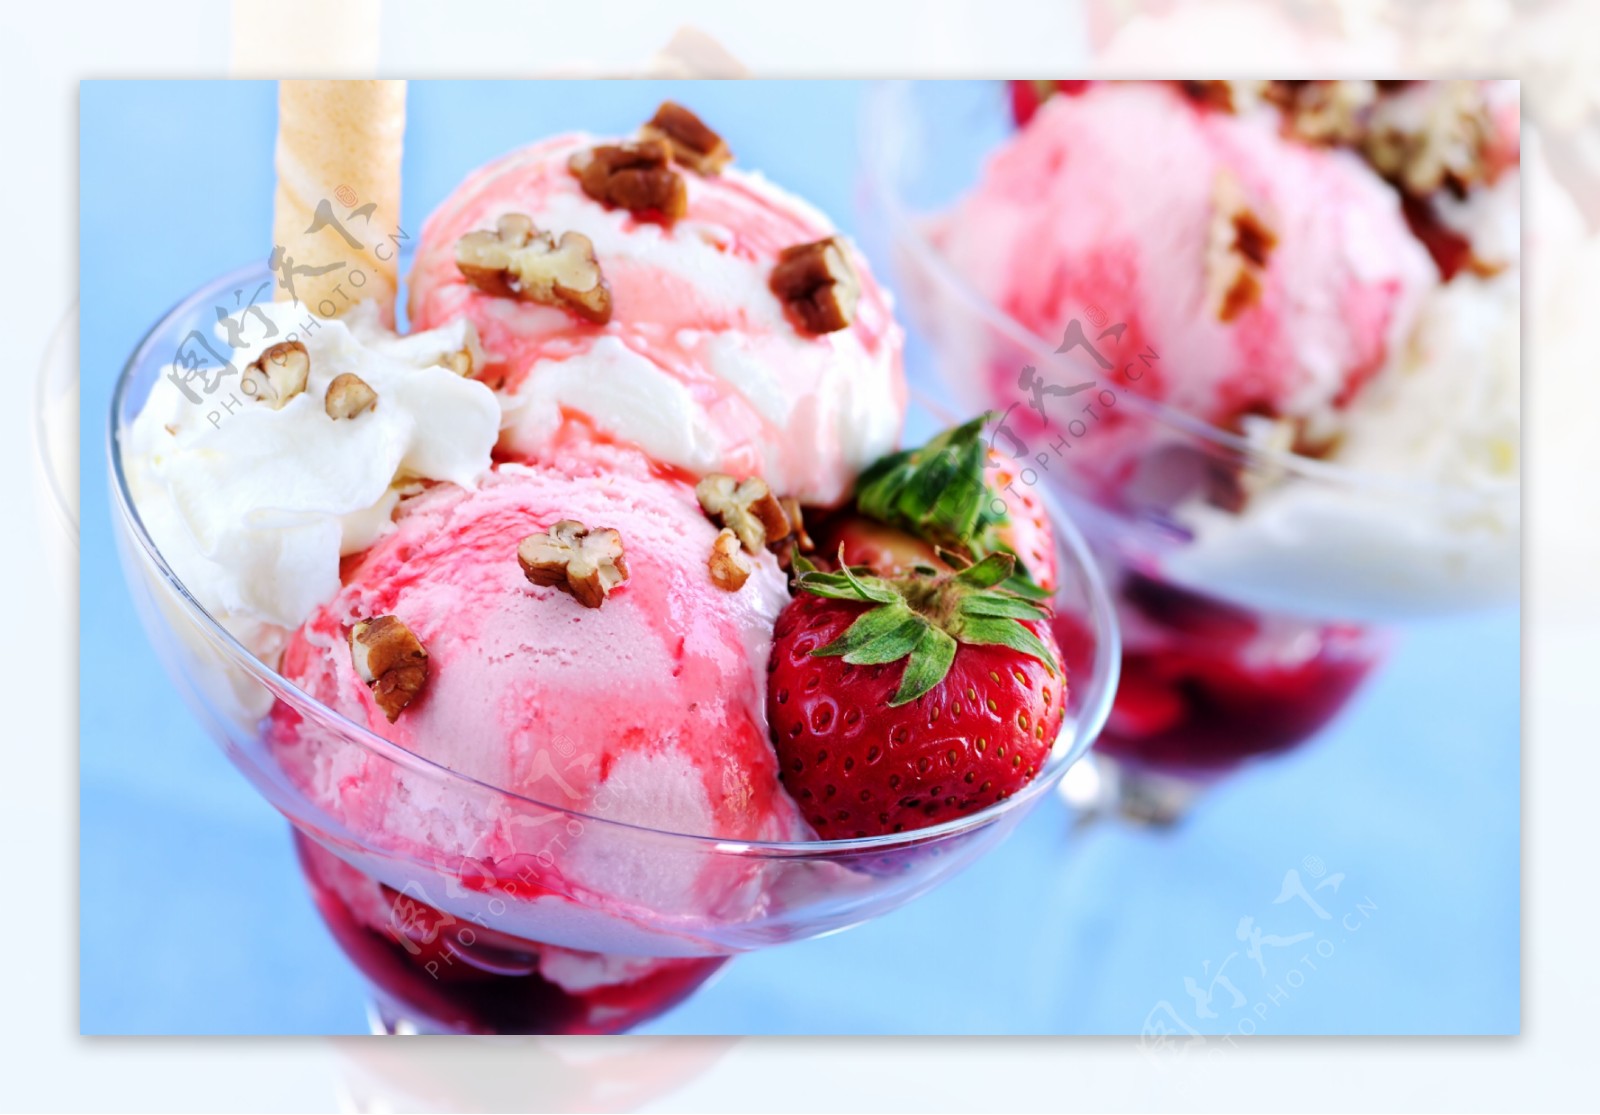 草莓奶油冰激凌